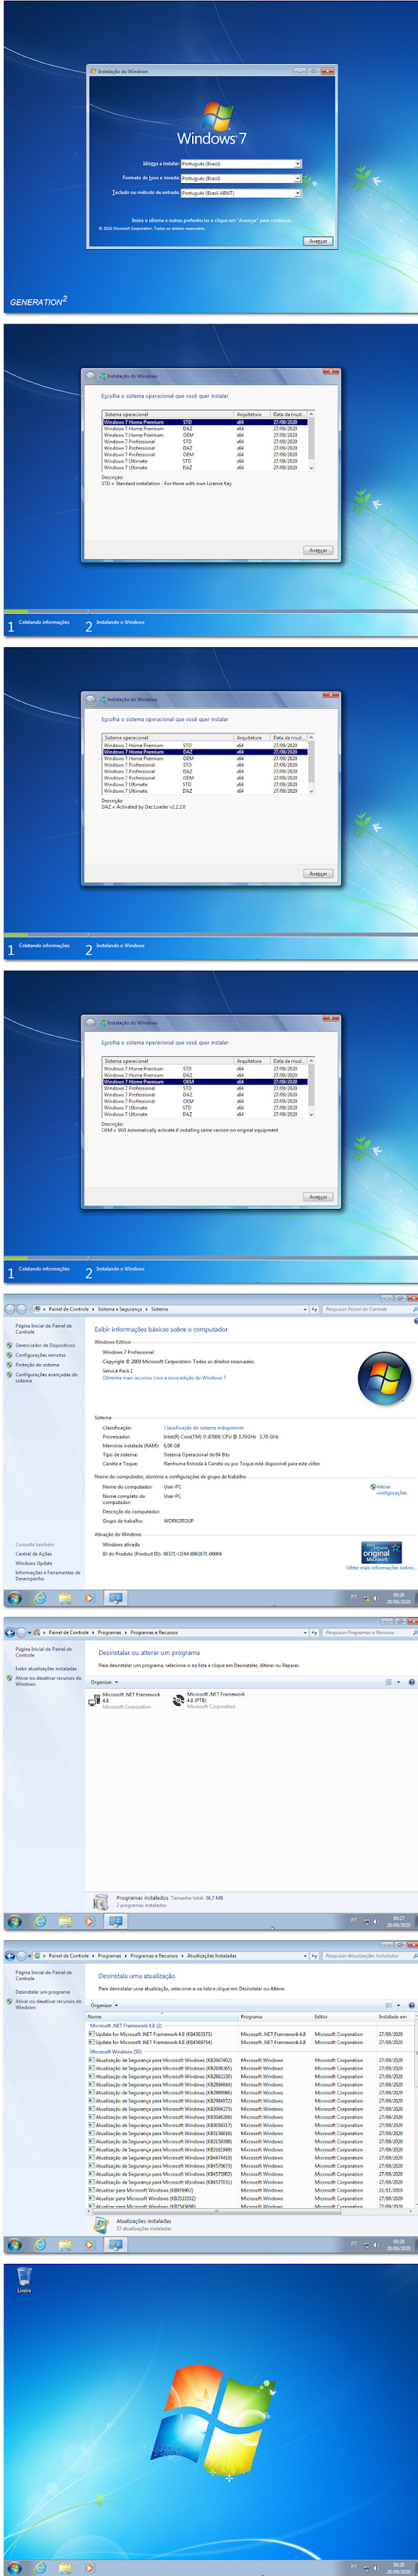 Download Grátis! Windows 7 SP1 X64 9in1 OEM ESD pt-BR - 2020